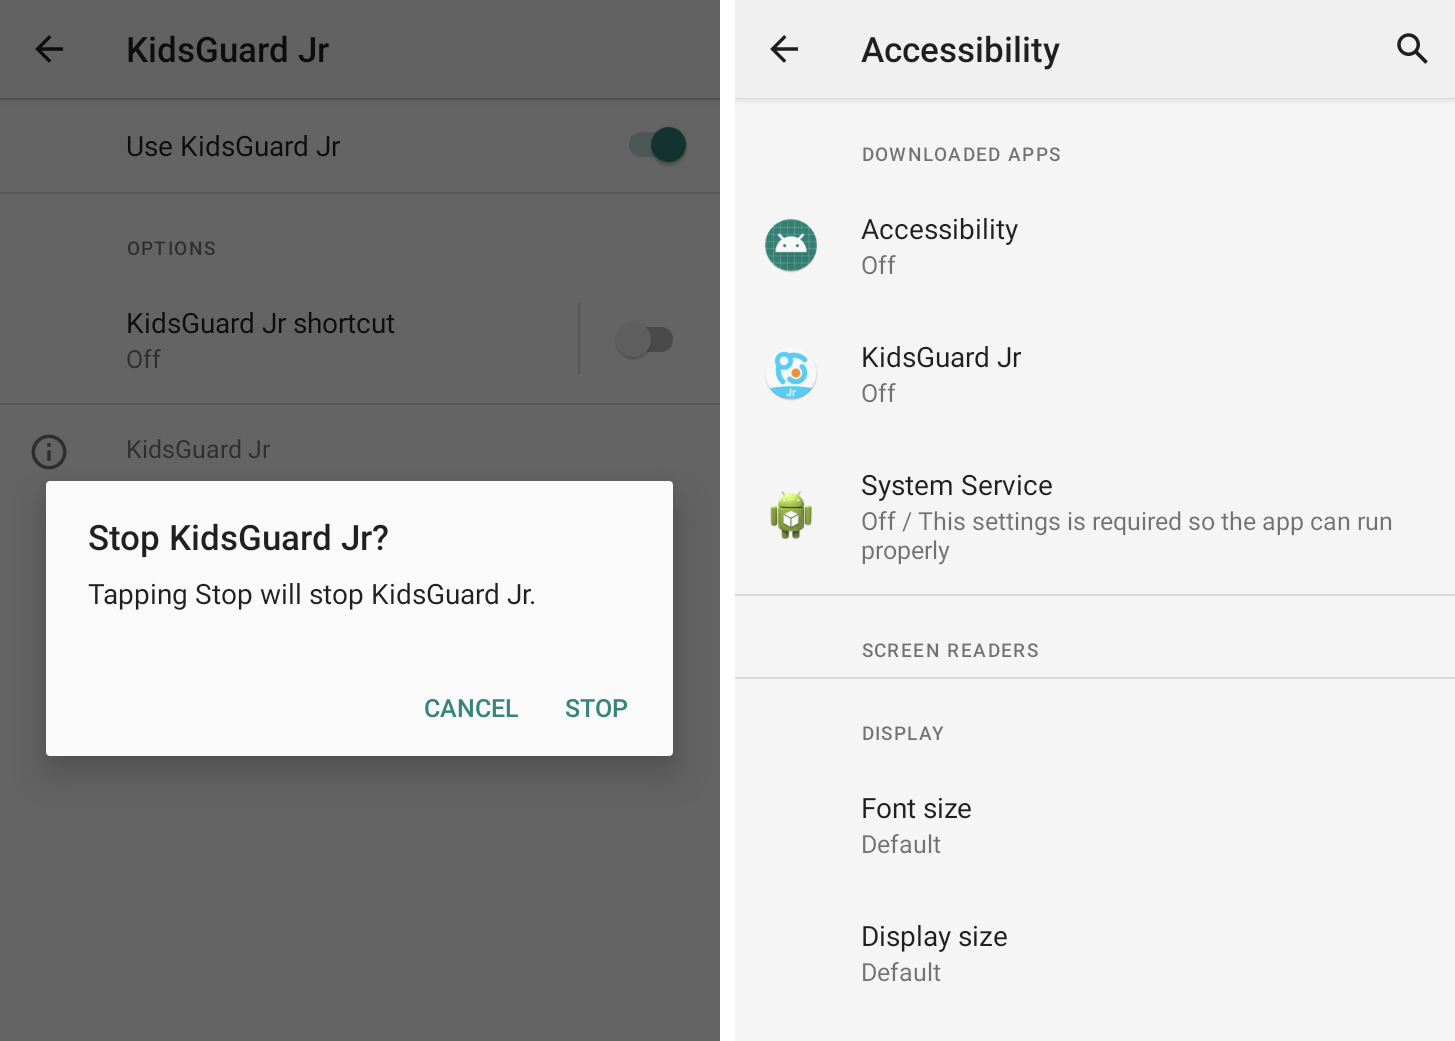 Zwei Screenshots nebeneinander zeigen eine App namens KidsGuard, die die Barrierefreiheitsfunktion in Android kapert, um ahnungslose Benutzer auszuspionieren.  Der zweite Screenshot zeigt drei Stalkerware-Apps – Accessibility, KidsGuard und System Service –, die alle ausgeschaltet sind, sodass sie nicht mehr aktiv funktionieren.